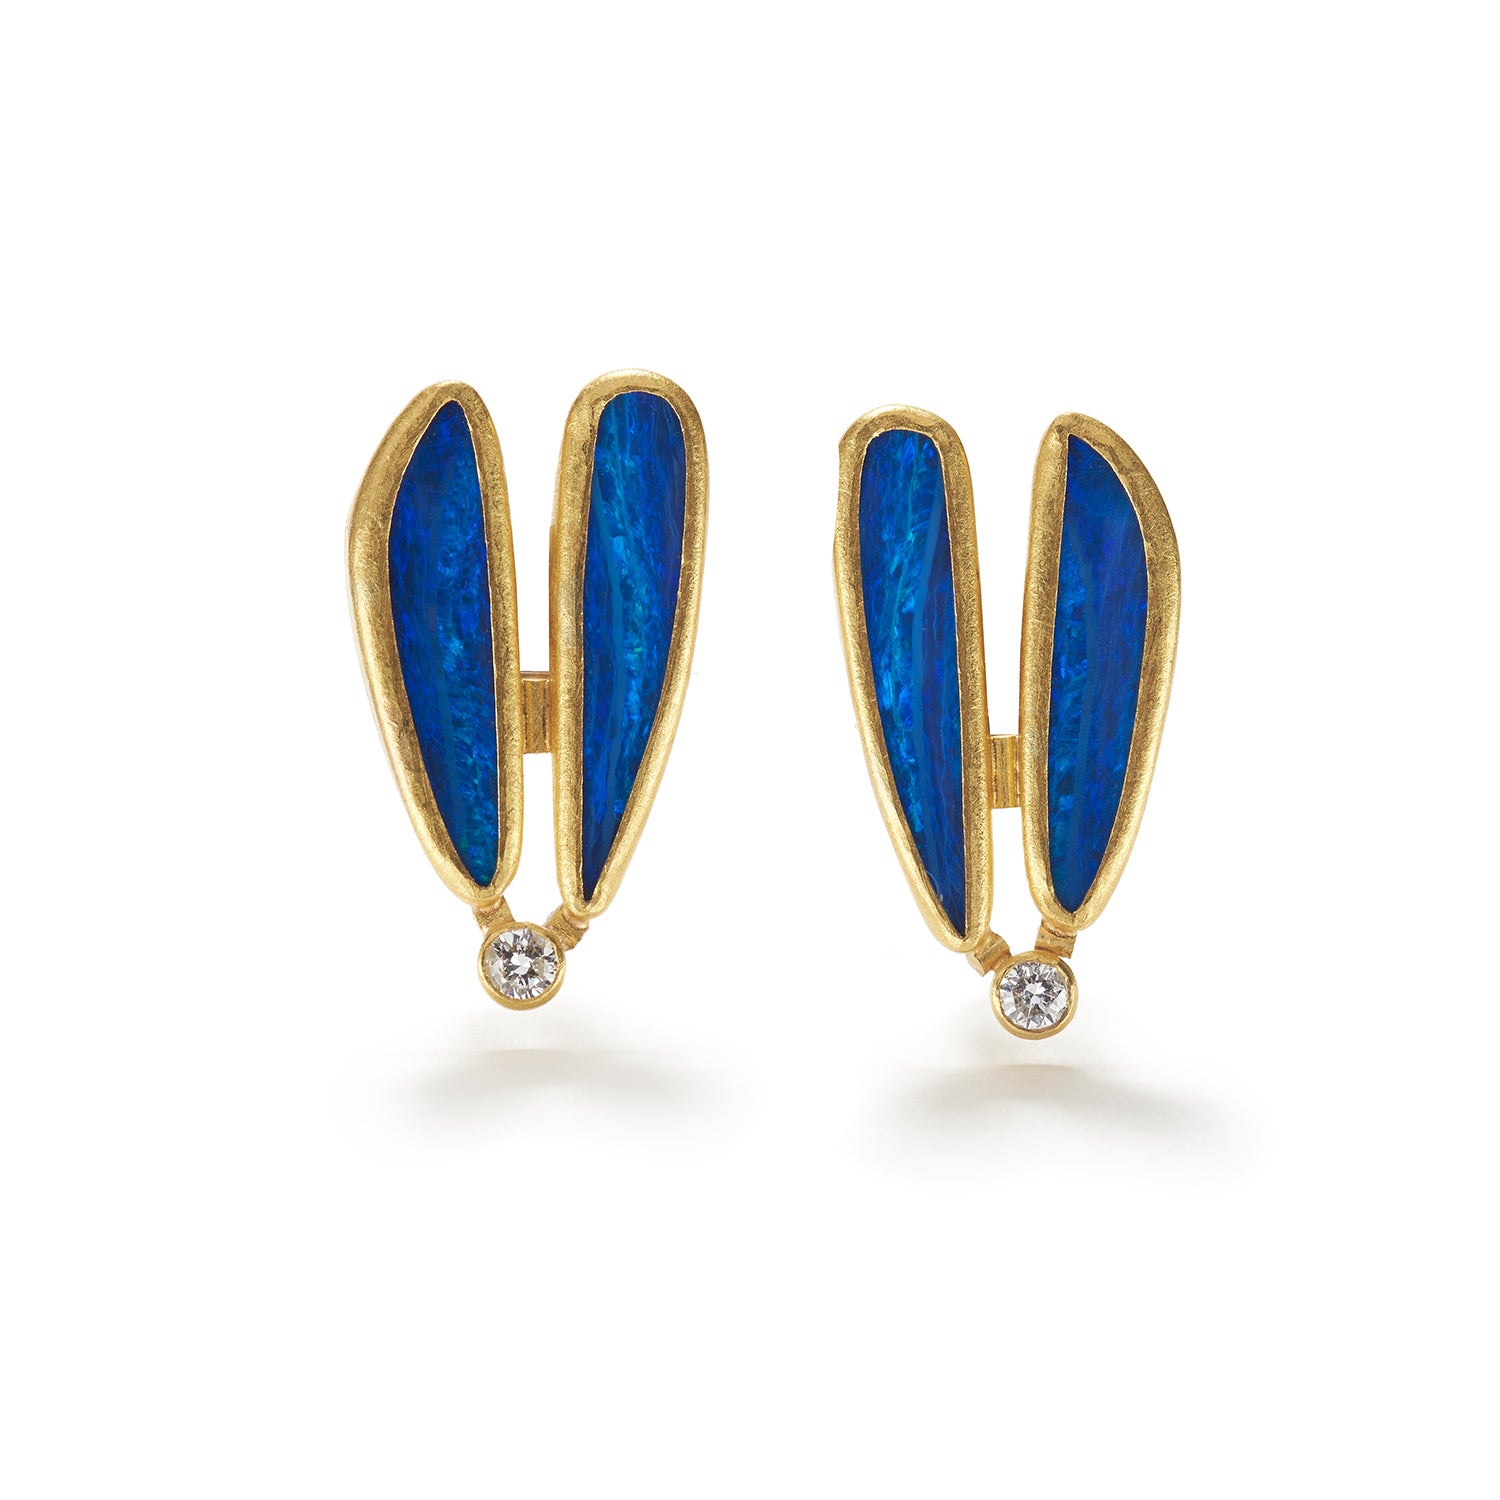 Australian Opal Doublet Earrings